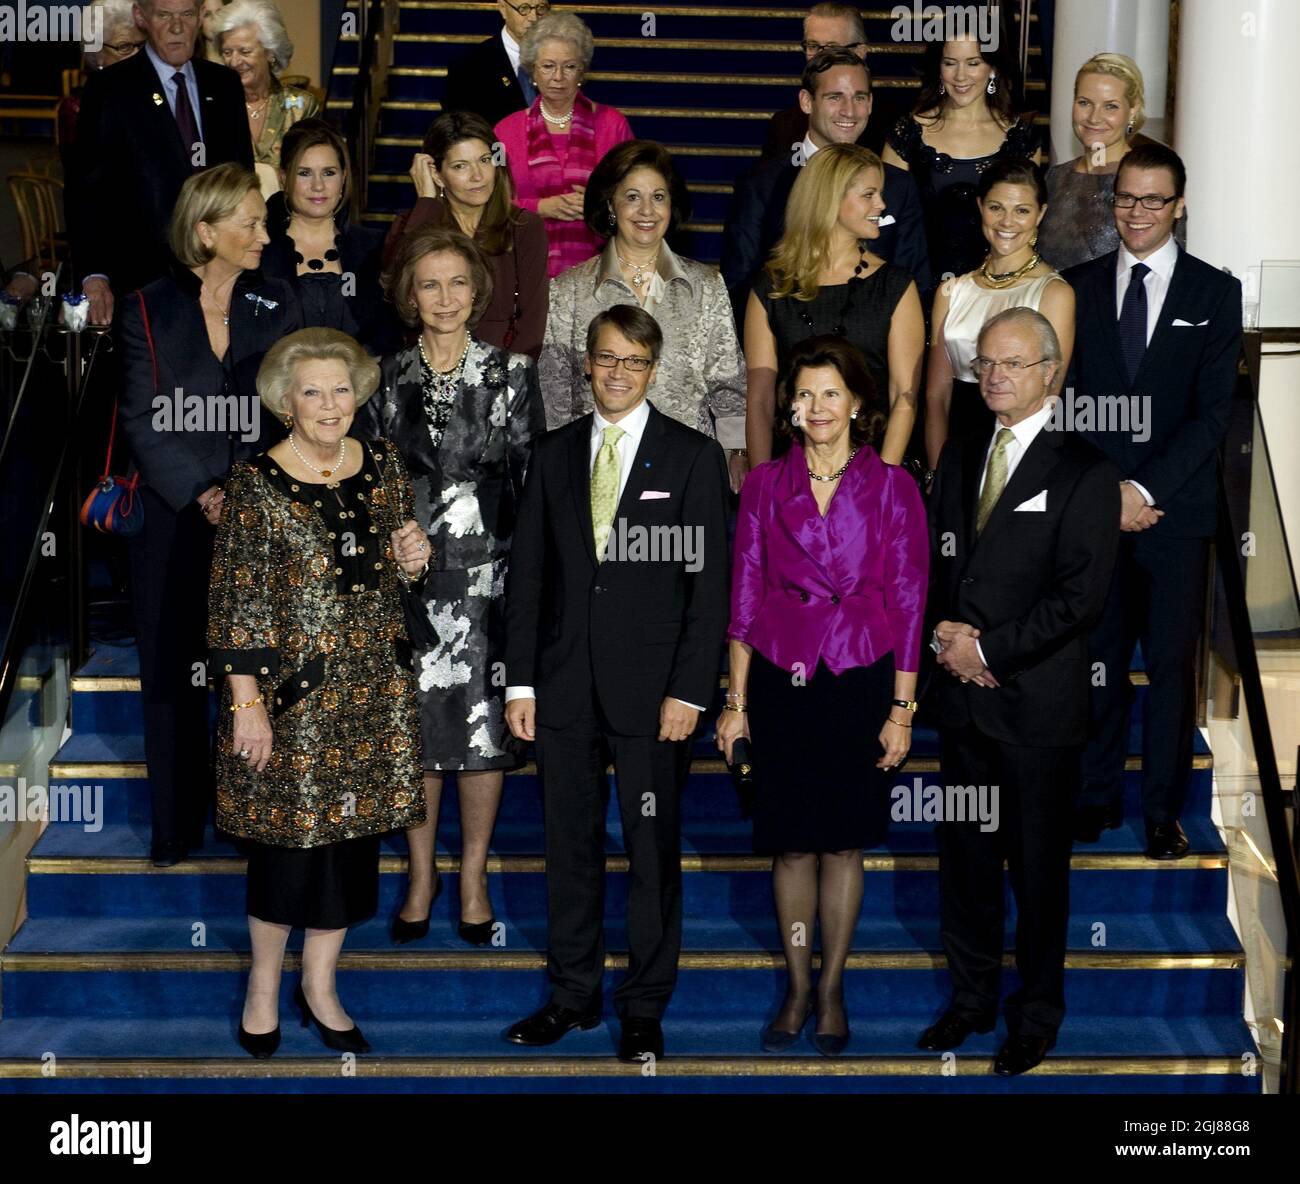 STOCKHOLM 20091119 Schwedischer Sozialminister Goran Hagglund (3 von links) Pose für ein Gruppenfoto mit europäischen Royals bei der Ankunft in der Berwald Hall in Stockholm für ein Jubiläumskonzert, das vom Sozialministerium und der Berwald Hall anlässlich des 20. Jahrestages der UN-Kinderrechtskonvention (UNCRC) organisiert wird. Erste Reihe von links, Königin Beatrix der Niederlande, Königin Sofia von Spanien, Goran Hagglund, Königin Silvia und König Carl Gustaf von Schweden. Zweite Reihe von links Königin Paola von Belgien, Großherzogin Maria Teresa von Luxemburg, Mme Margarida Barro Stockfoto